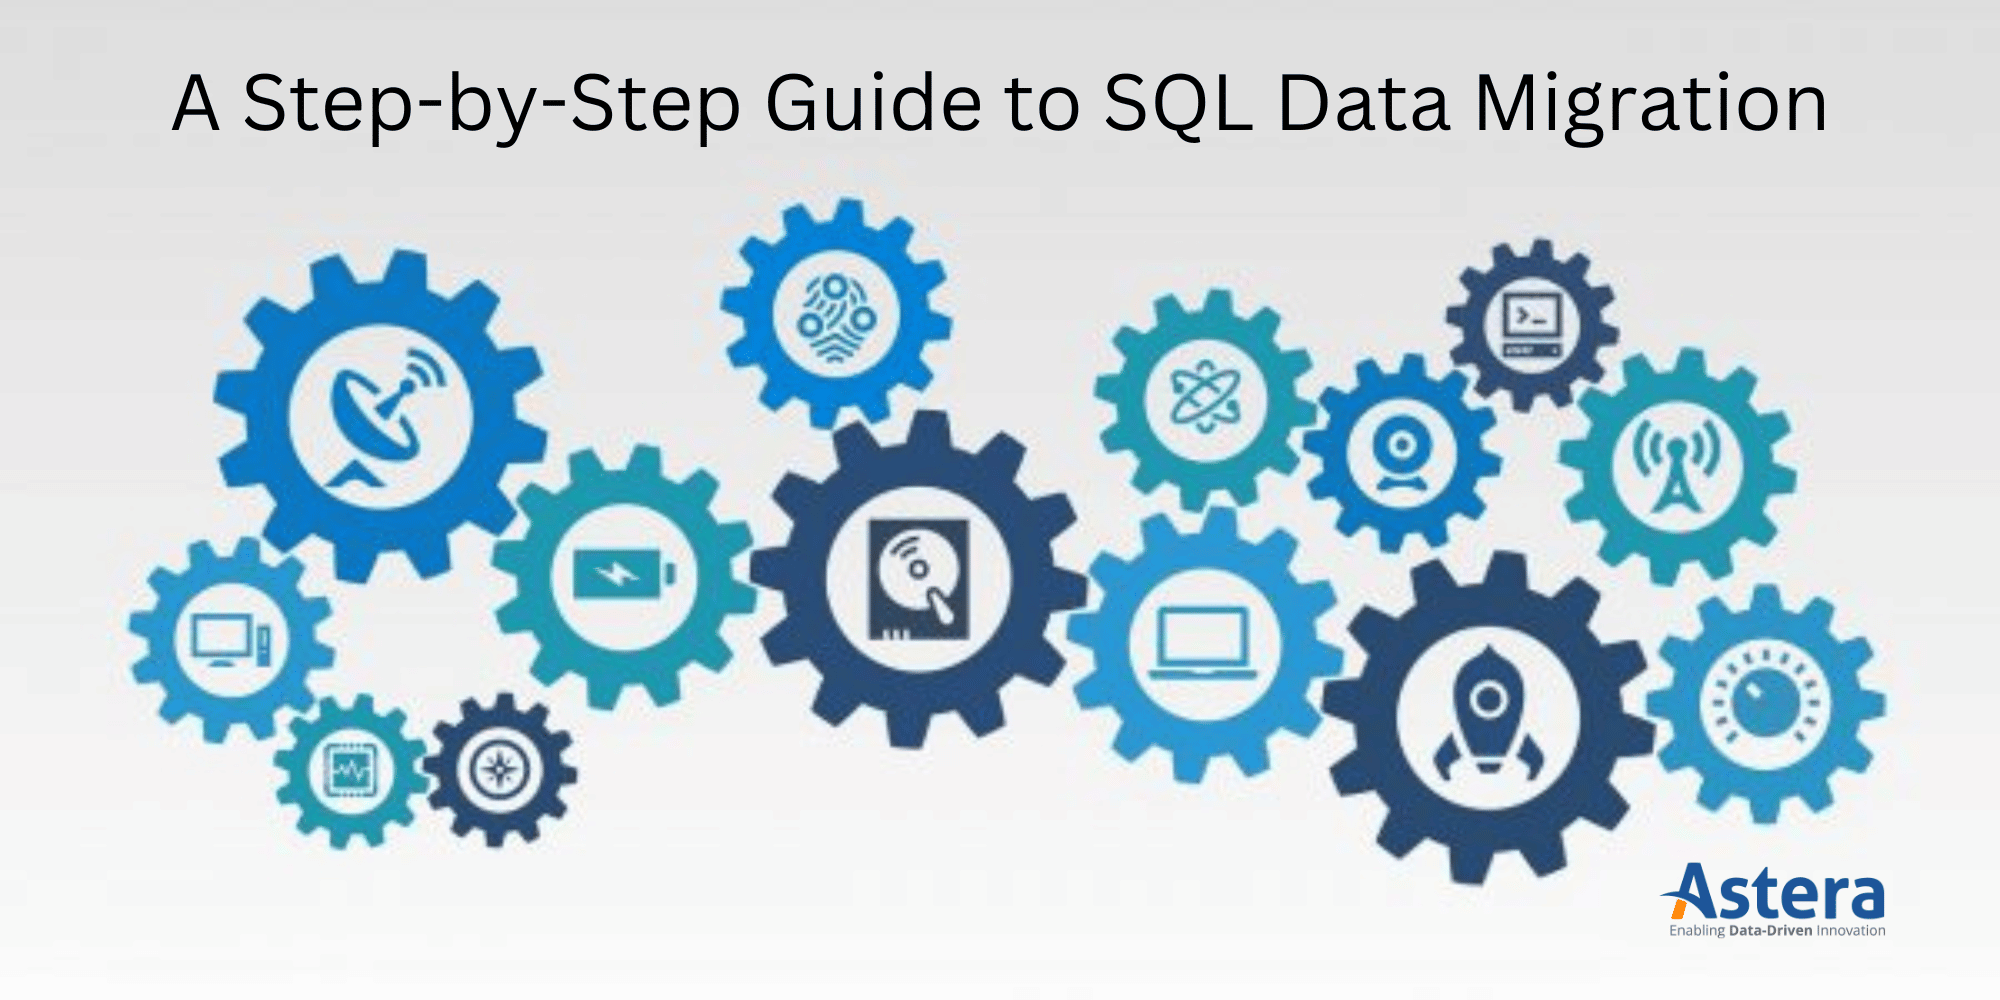 دليل خطوة بخطوة لترحيل بيانات SQL